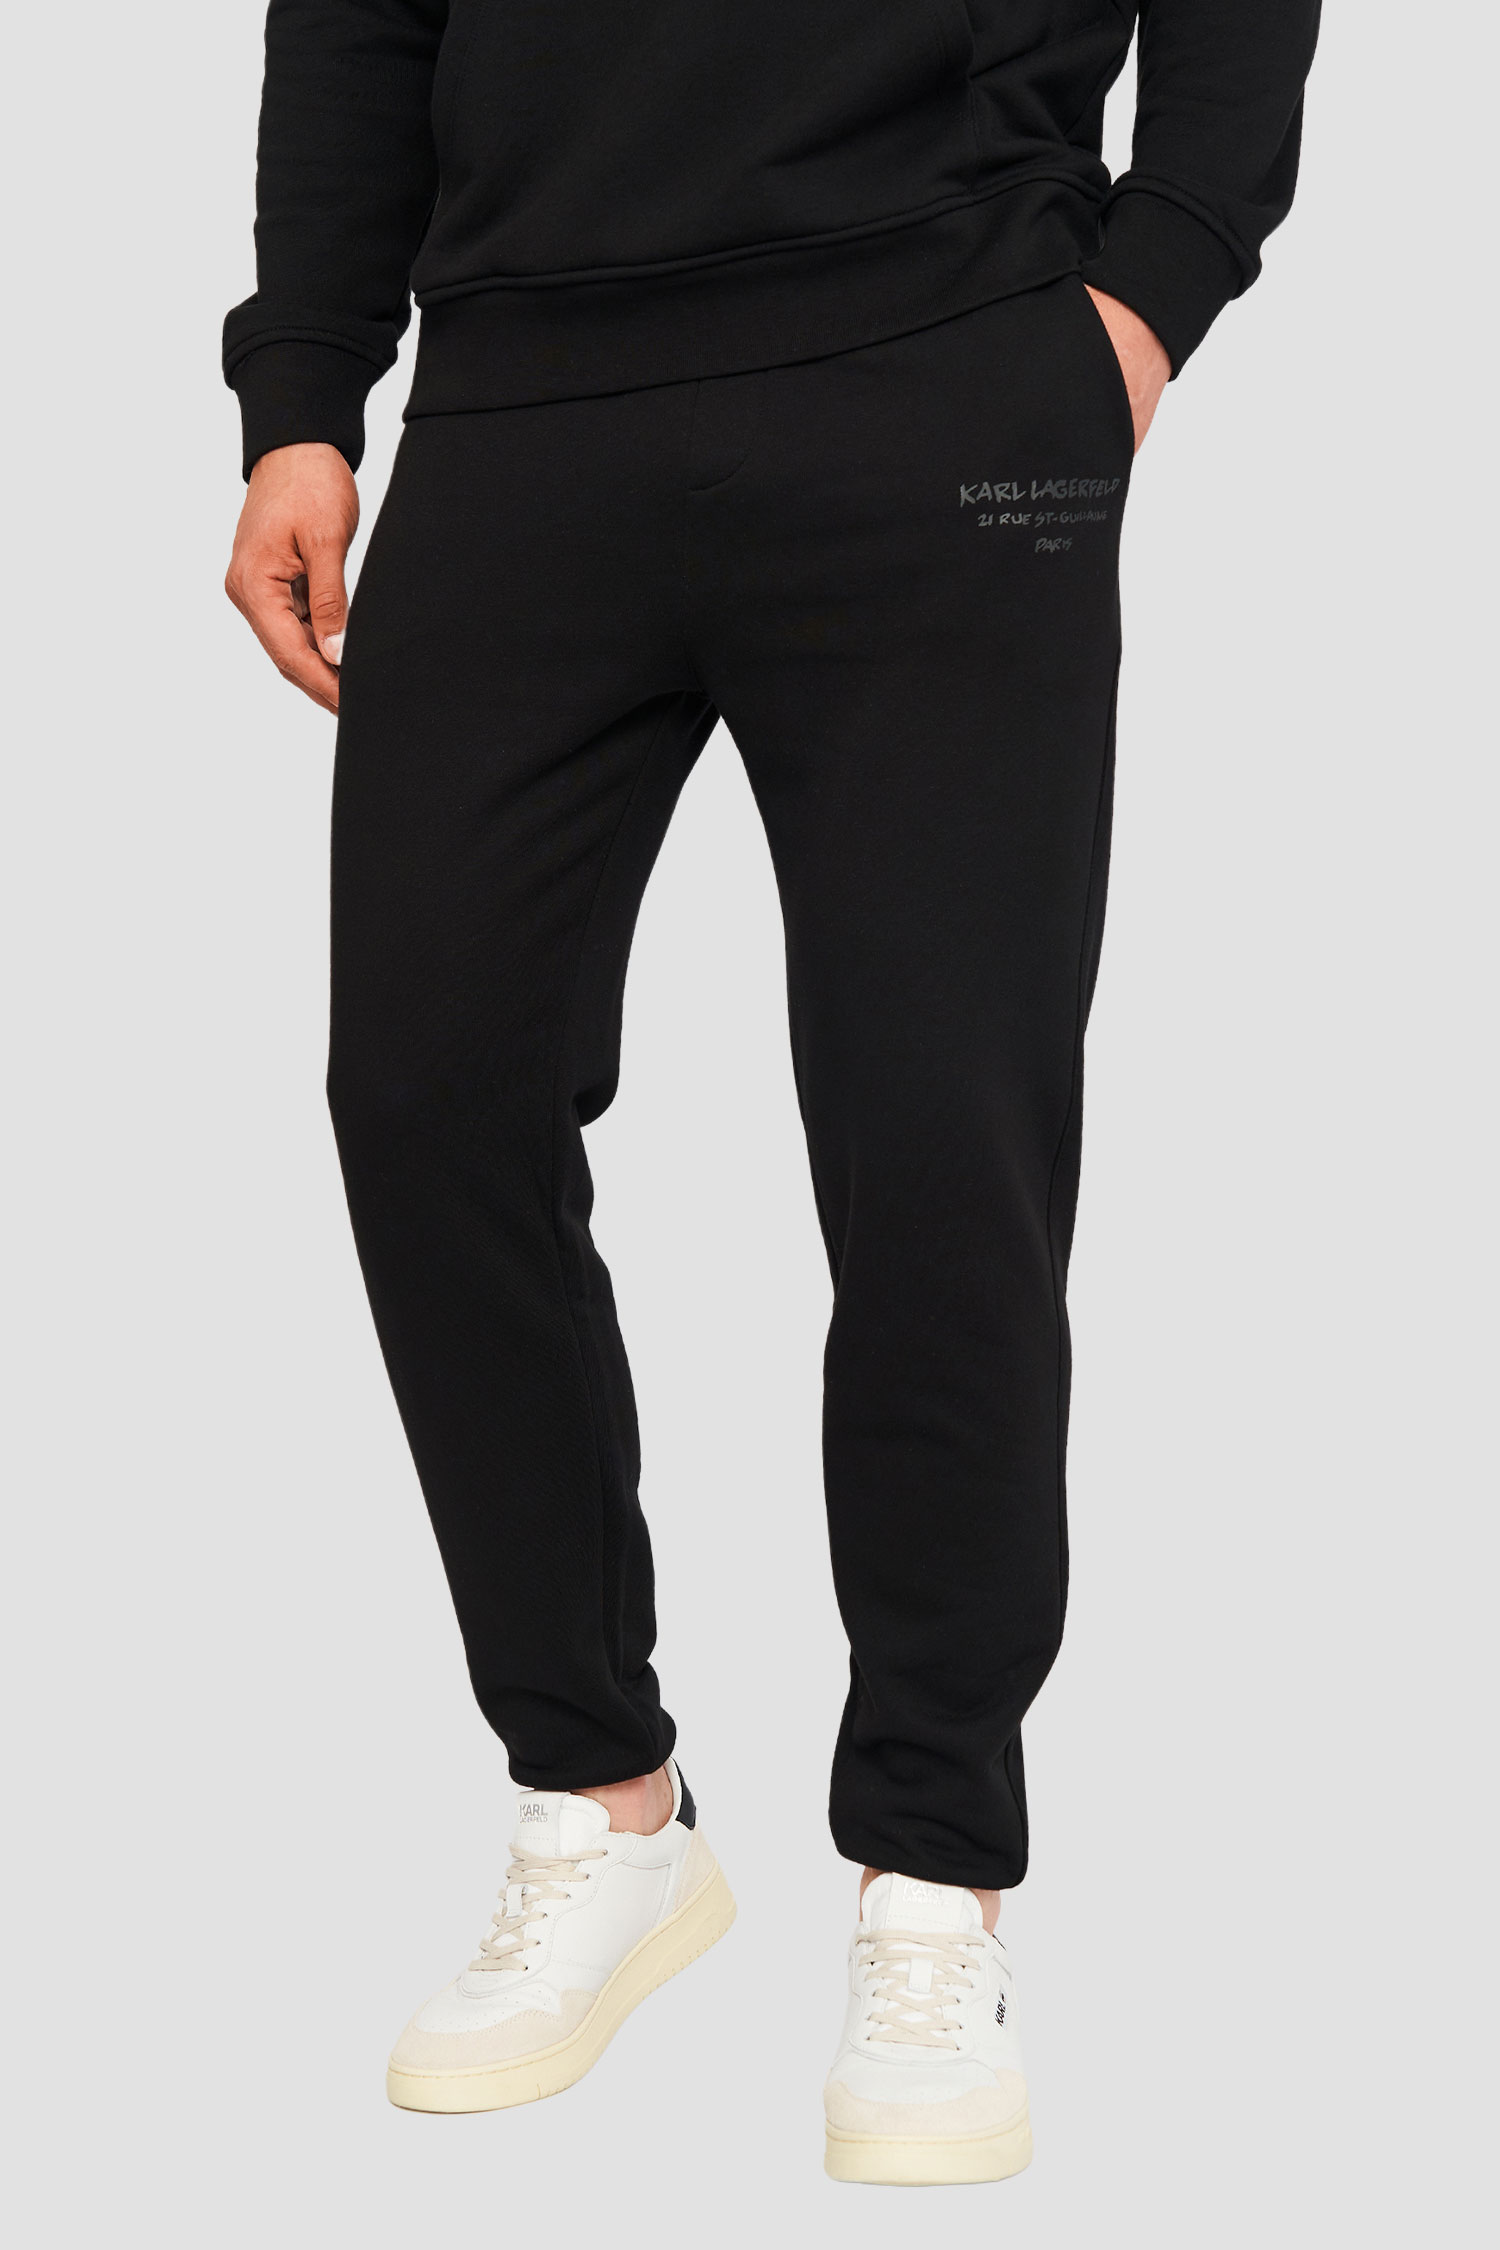 Мужские черные спортивные брюки Karl Lagerfeld 533910.705412;990